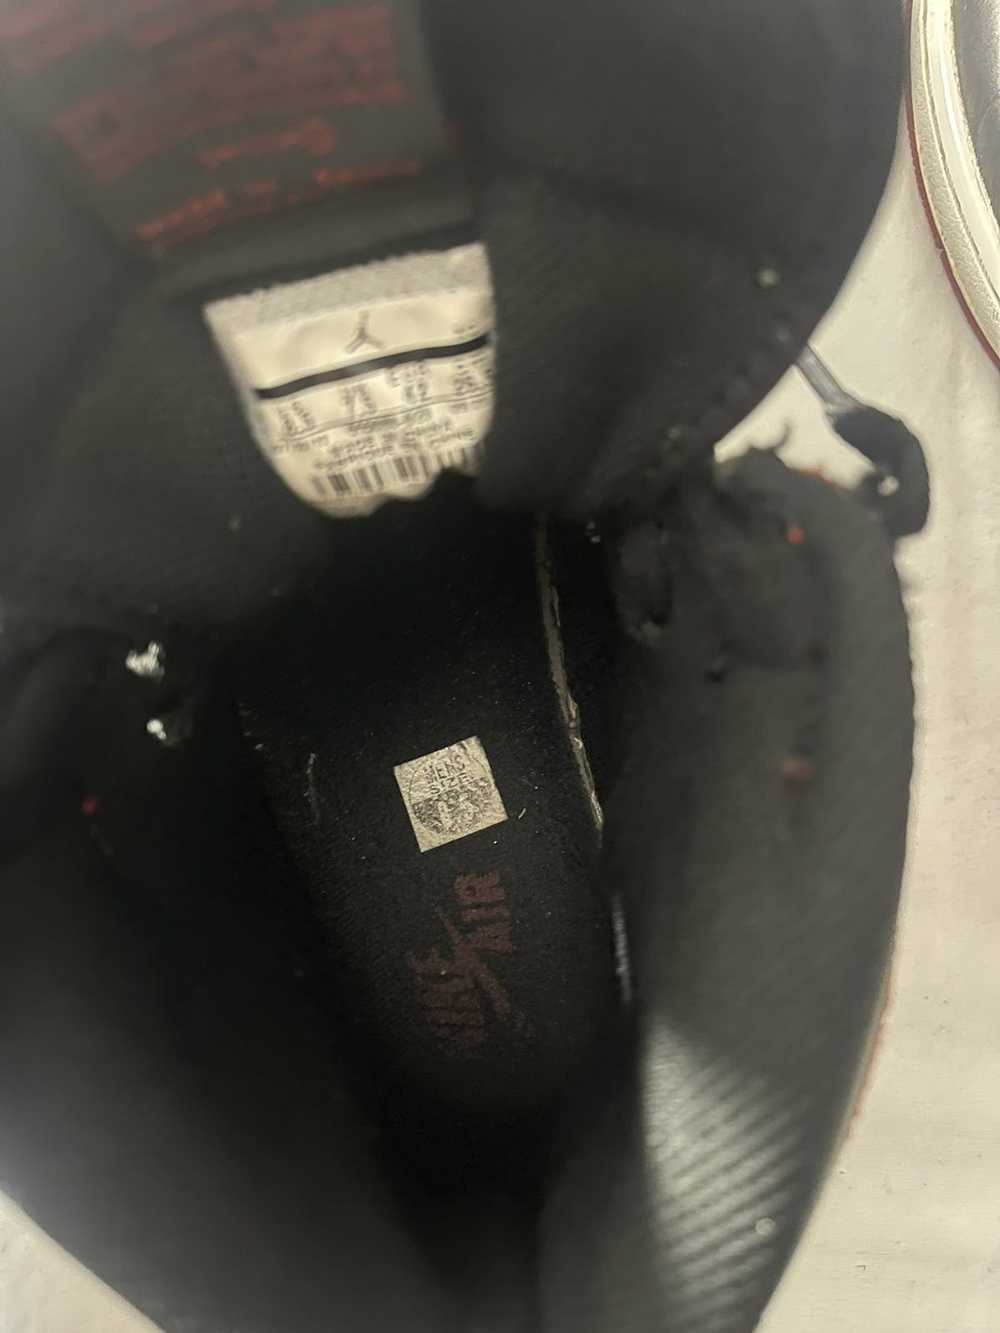 Jordan Brand × Nike Air Jordan 1 BRED (2013) - image 6